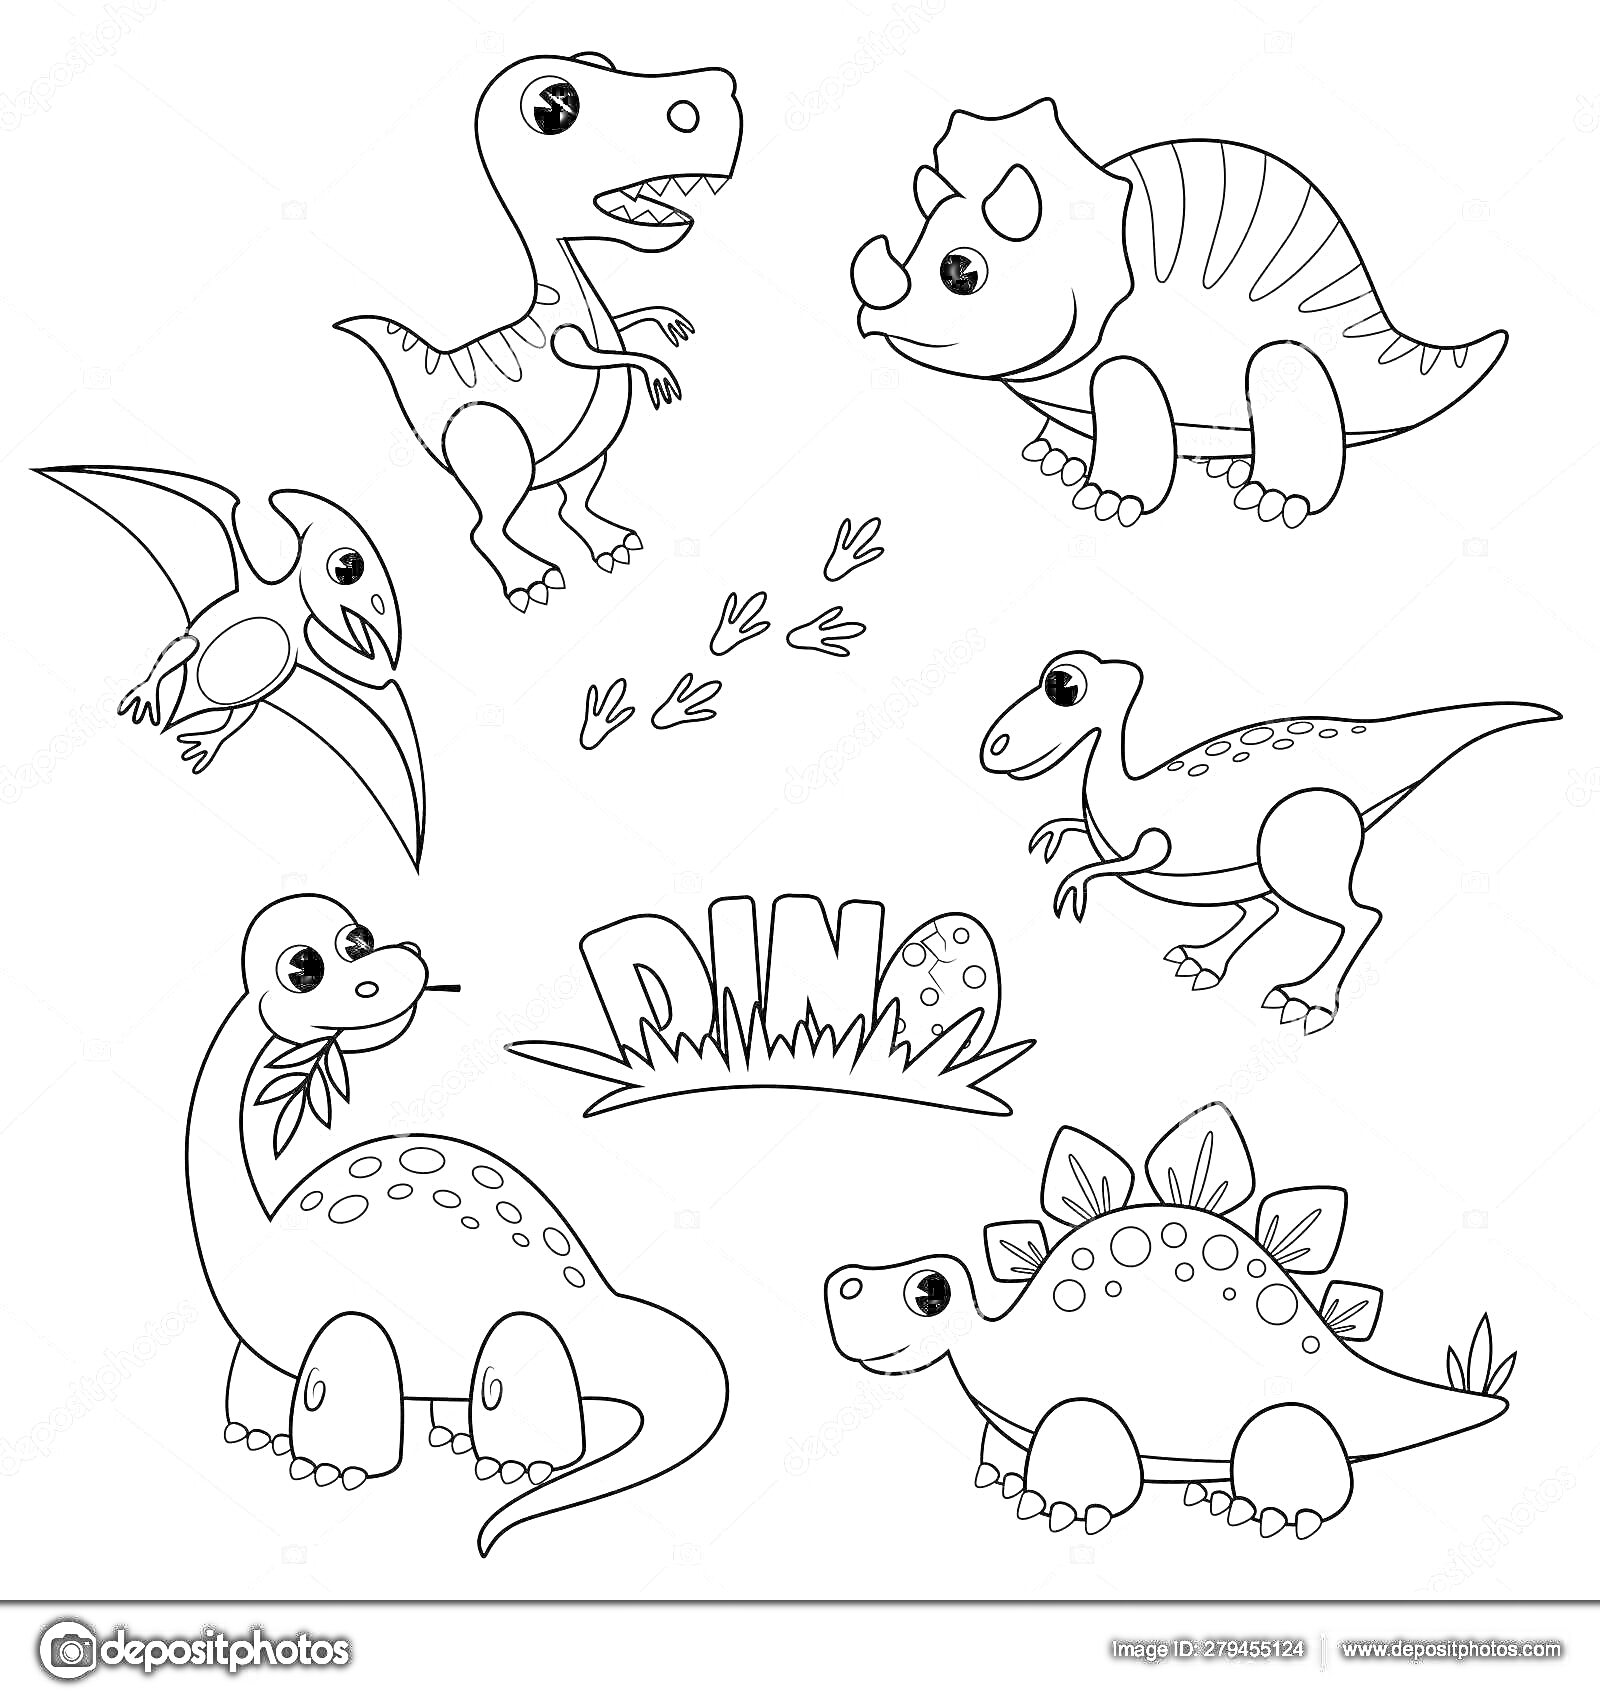 На раскраске изображено: Динозавр, Следы лап, Надпись, Трицератопс, Стегозавр, Брахиозавр, Птеродактиль